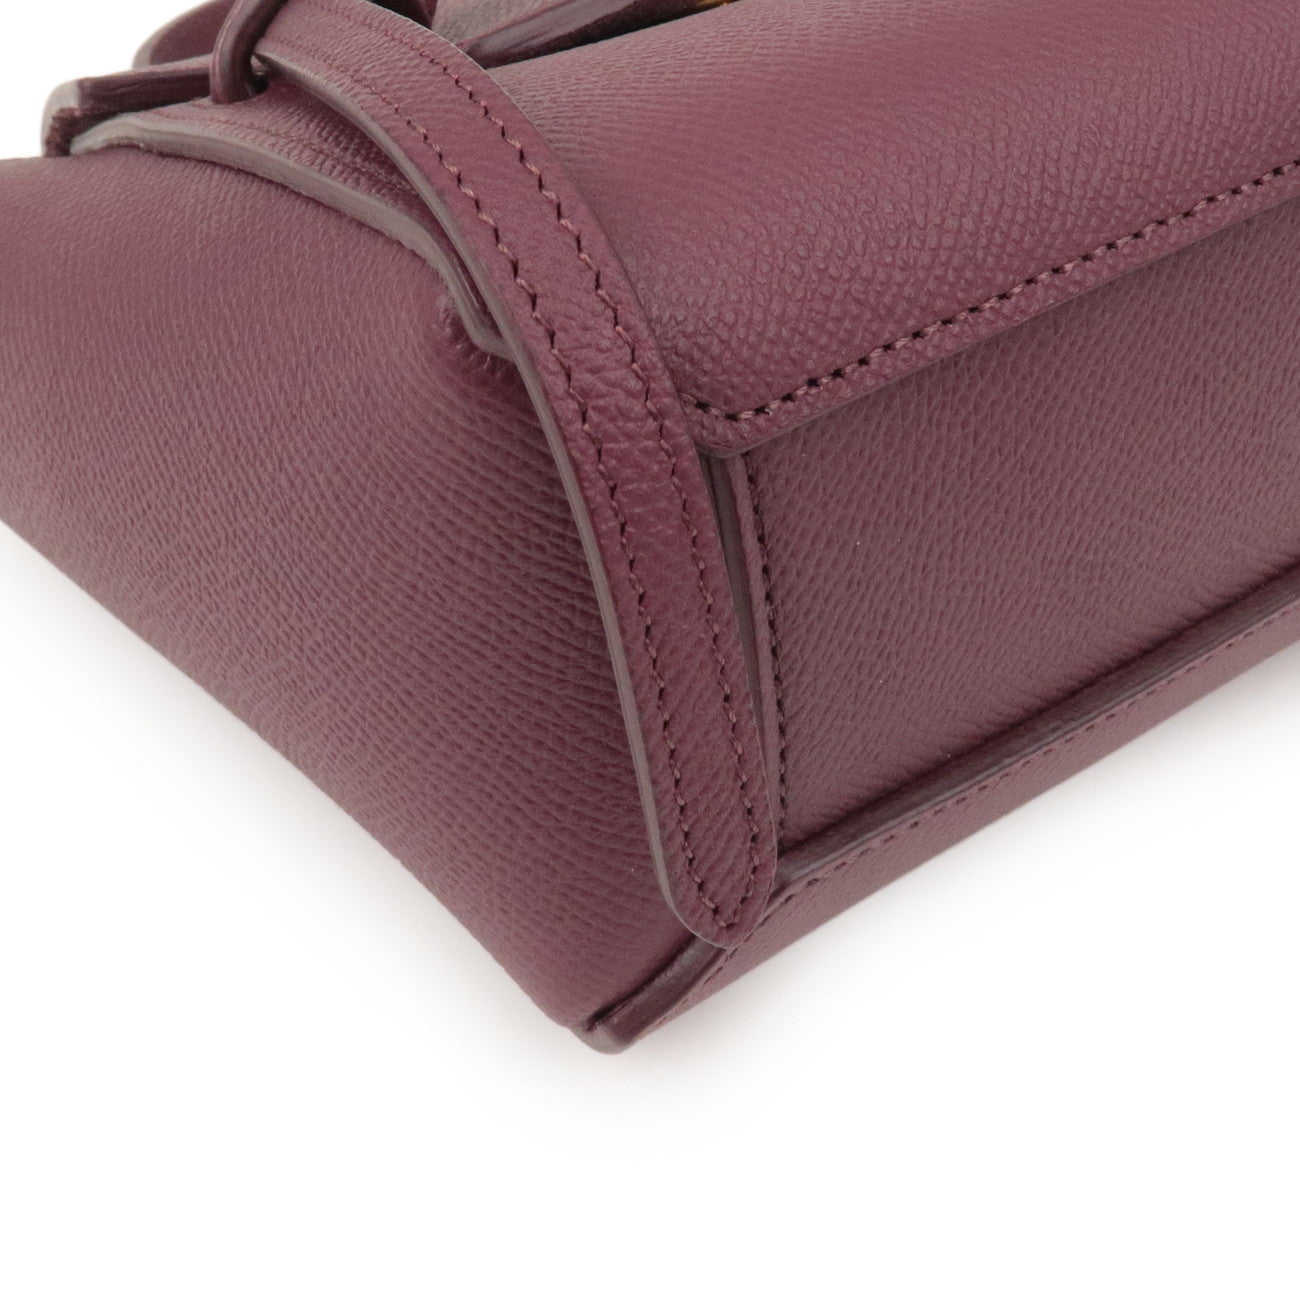 CELINE Leather Pico Belt Bag 2Way Shoulder Bag Bordeaux 194263